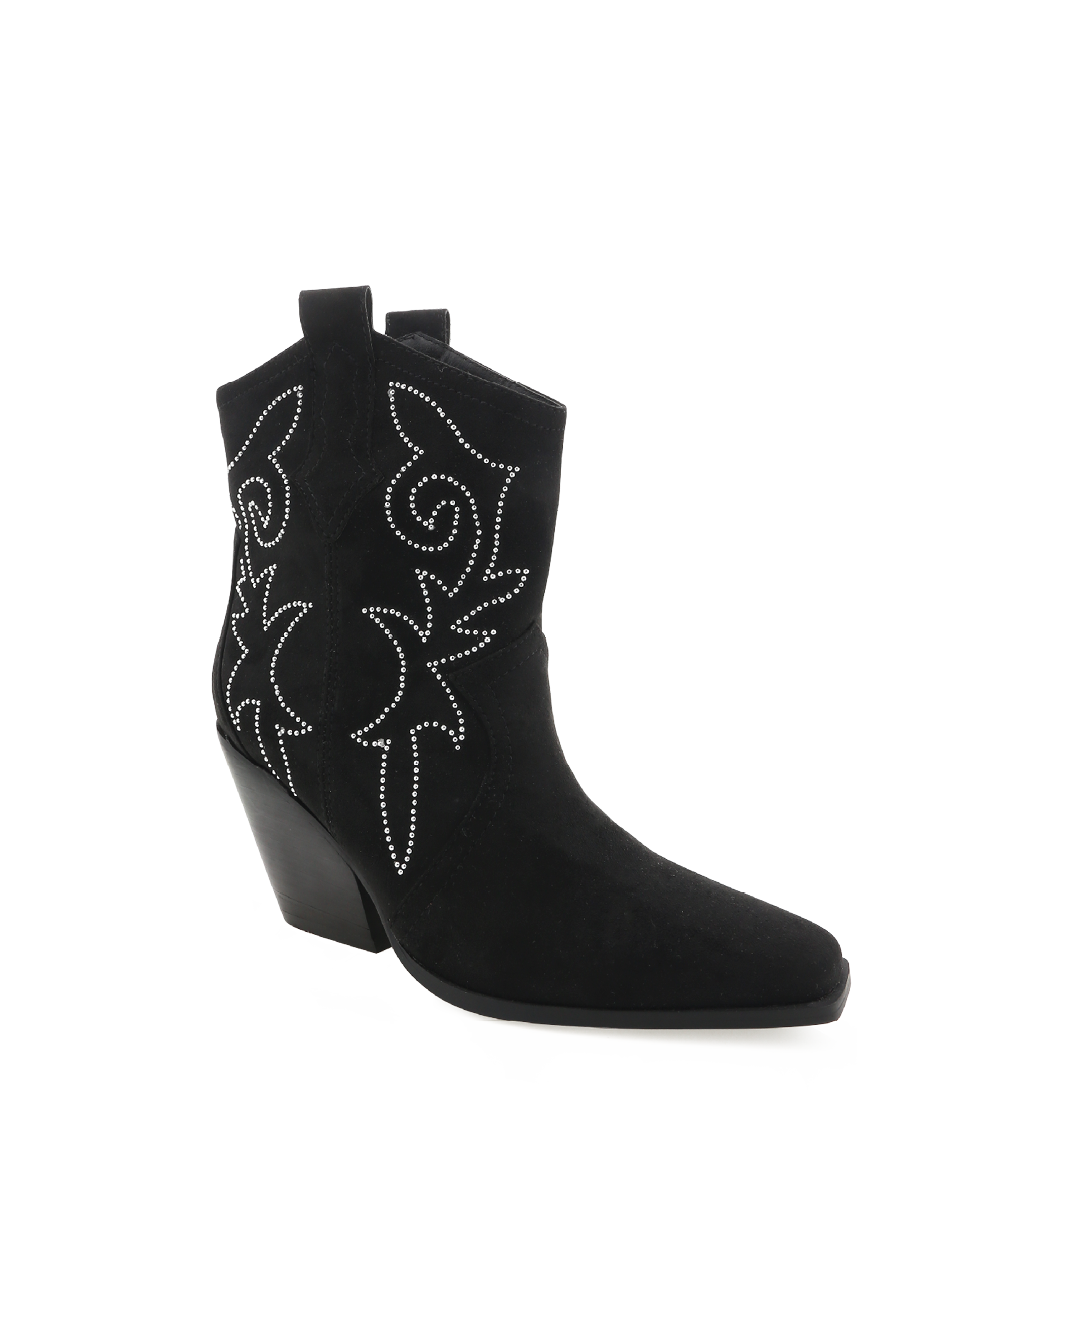 CAIRA - BLACK SUEDE-Boots-Billini-BILLINI USA